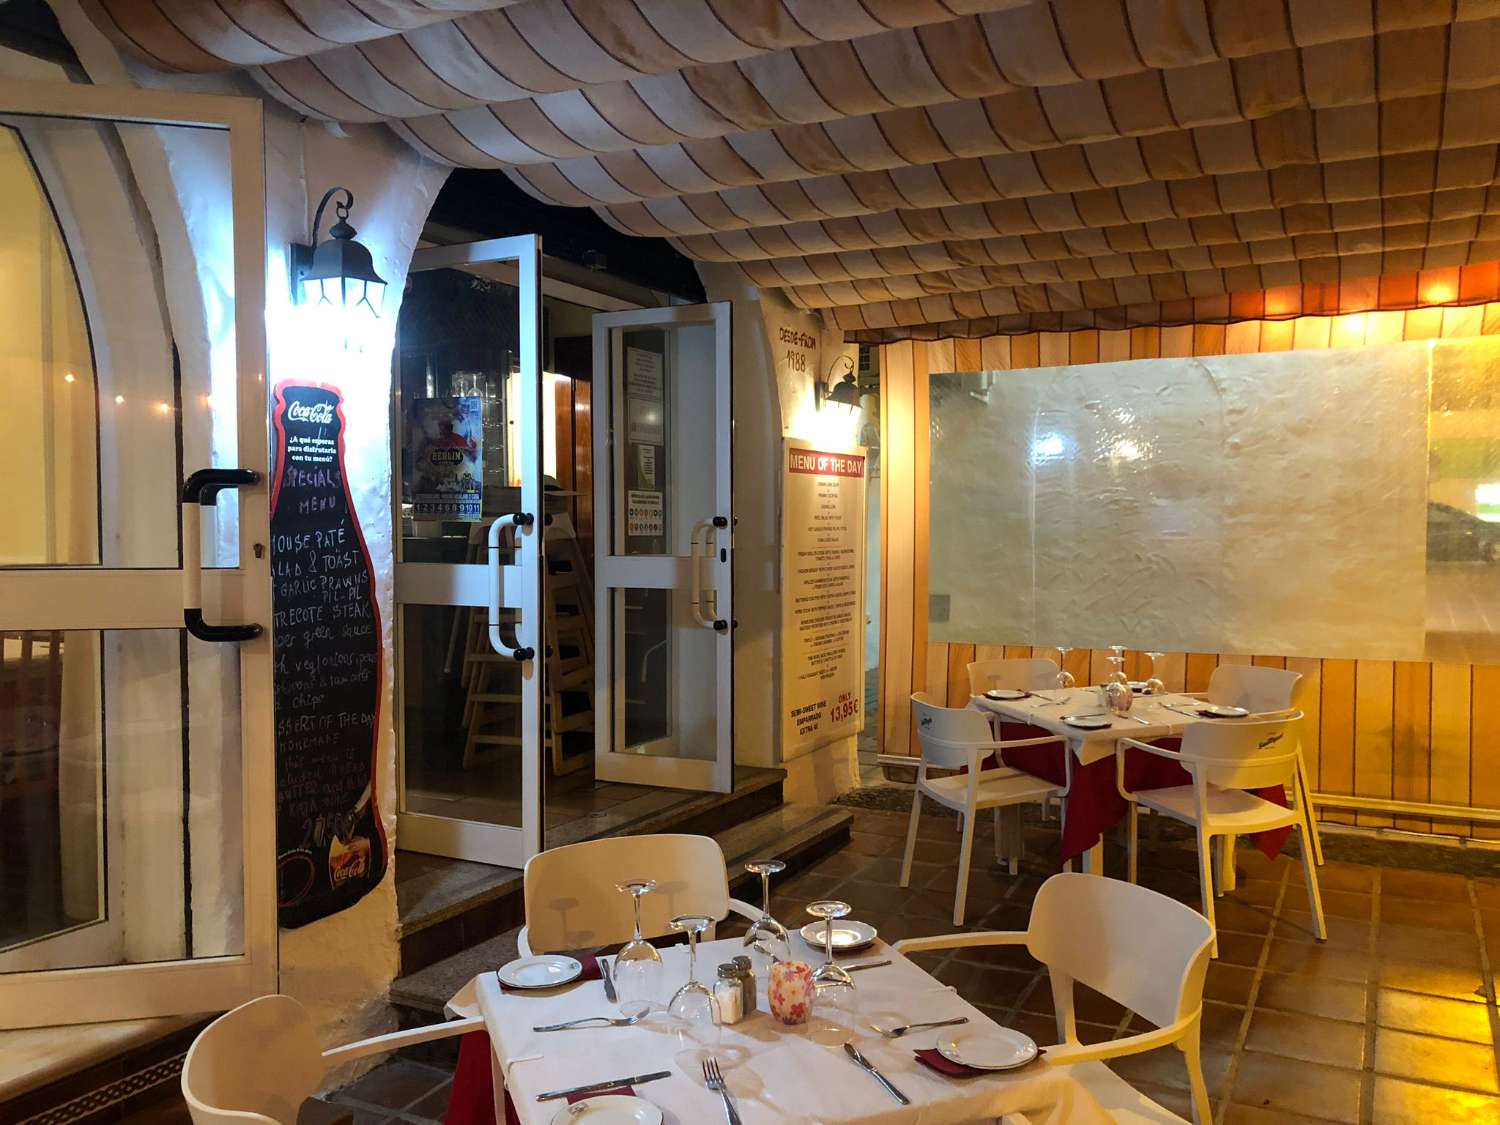 Restaurante en Benalmadena Costa del Sol - IDEAL BUFFET - Gran Restaurante LLAVE EN MANO